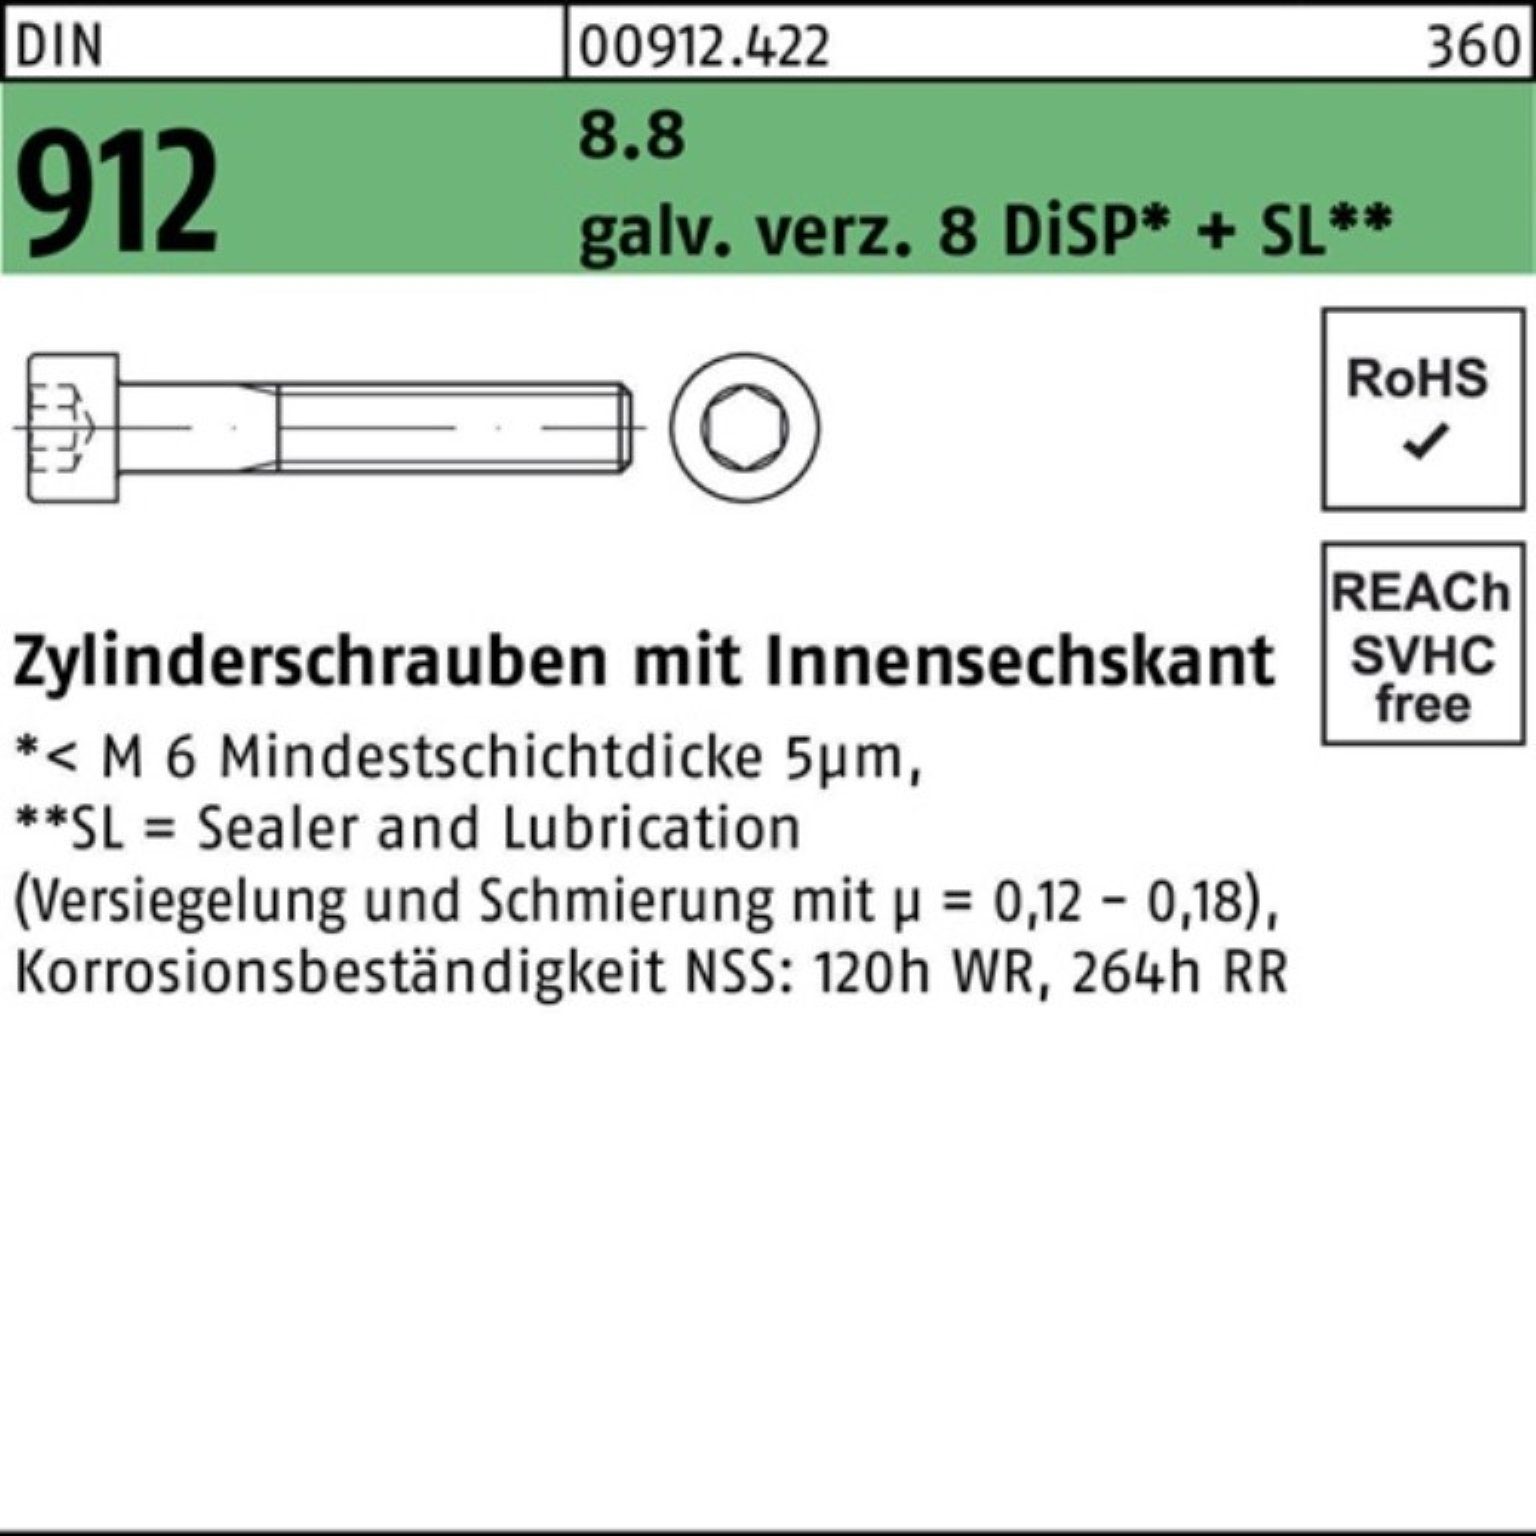 DiS gal Zylinderschraube 8 Pack 100er Zylinderschraube Zn DIN M20x150 8.8 Innen-6kt Reyher 912